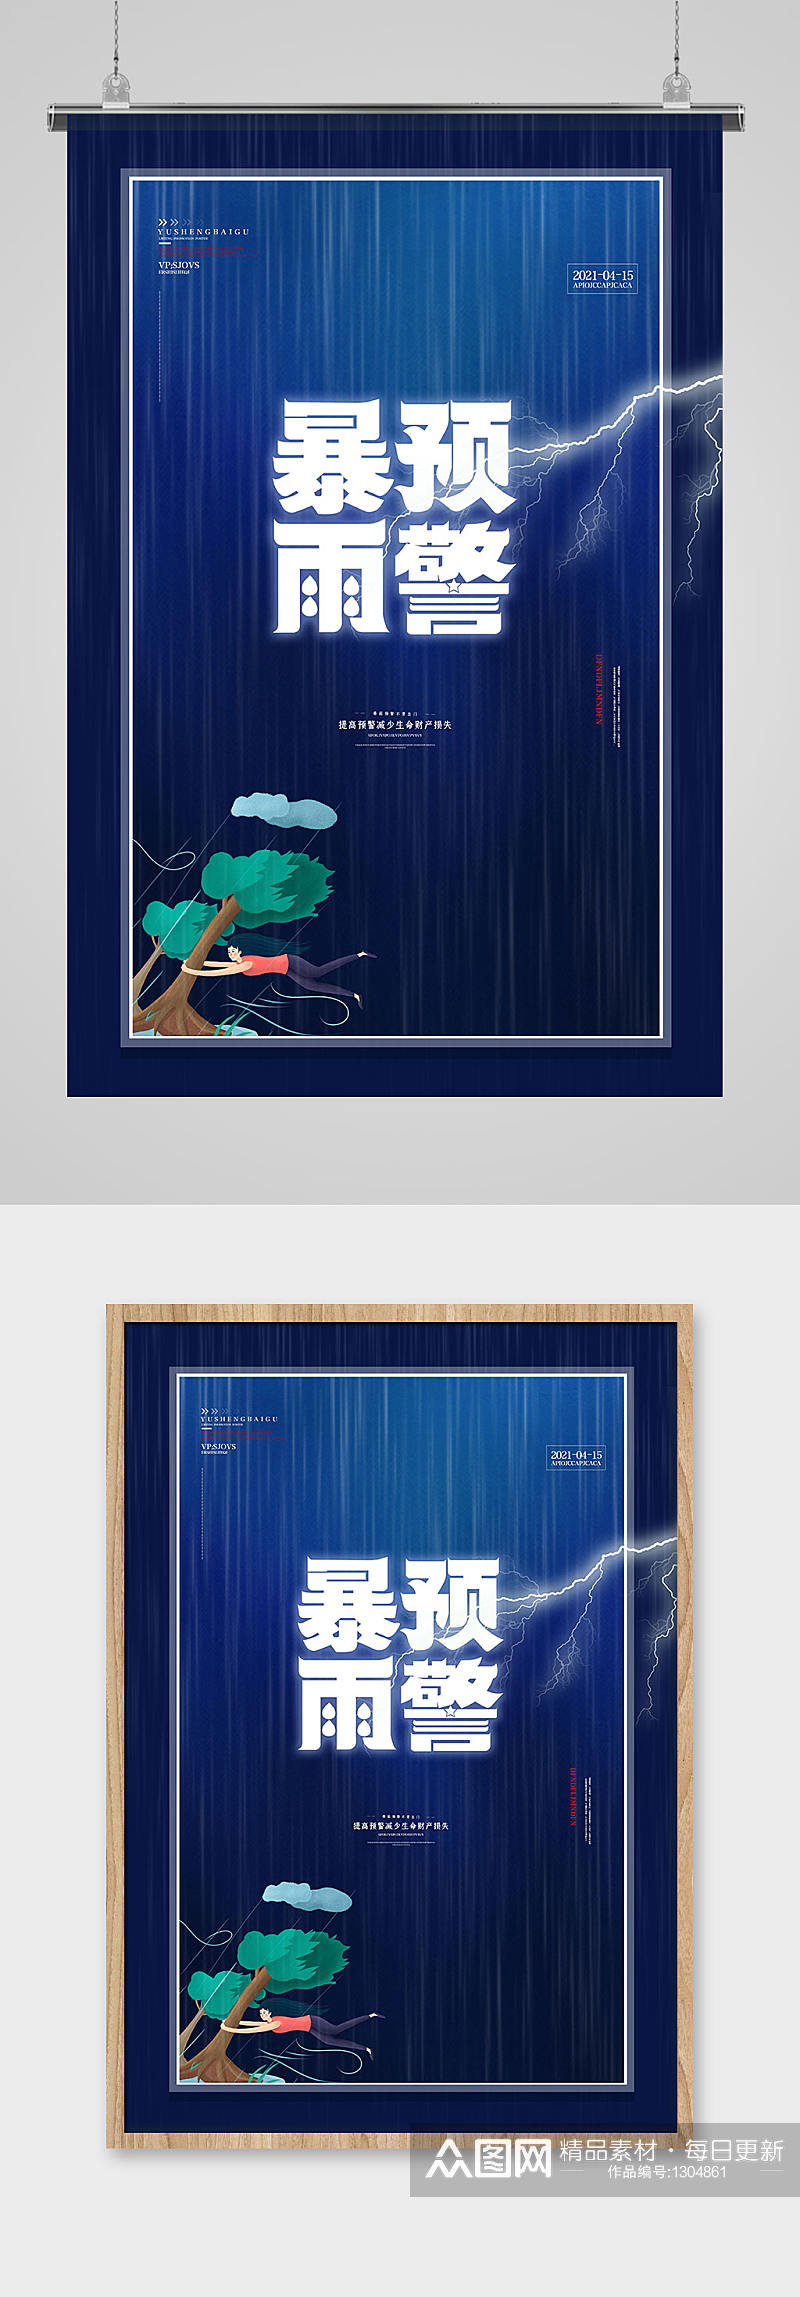 暴雨预警闪电蓝色创意海报素材